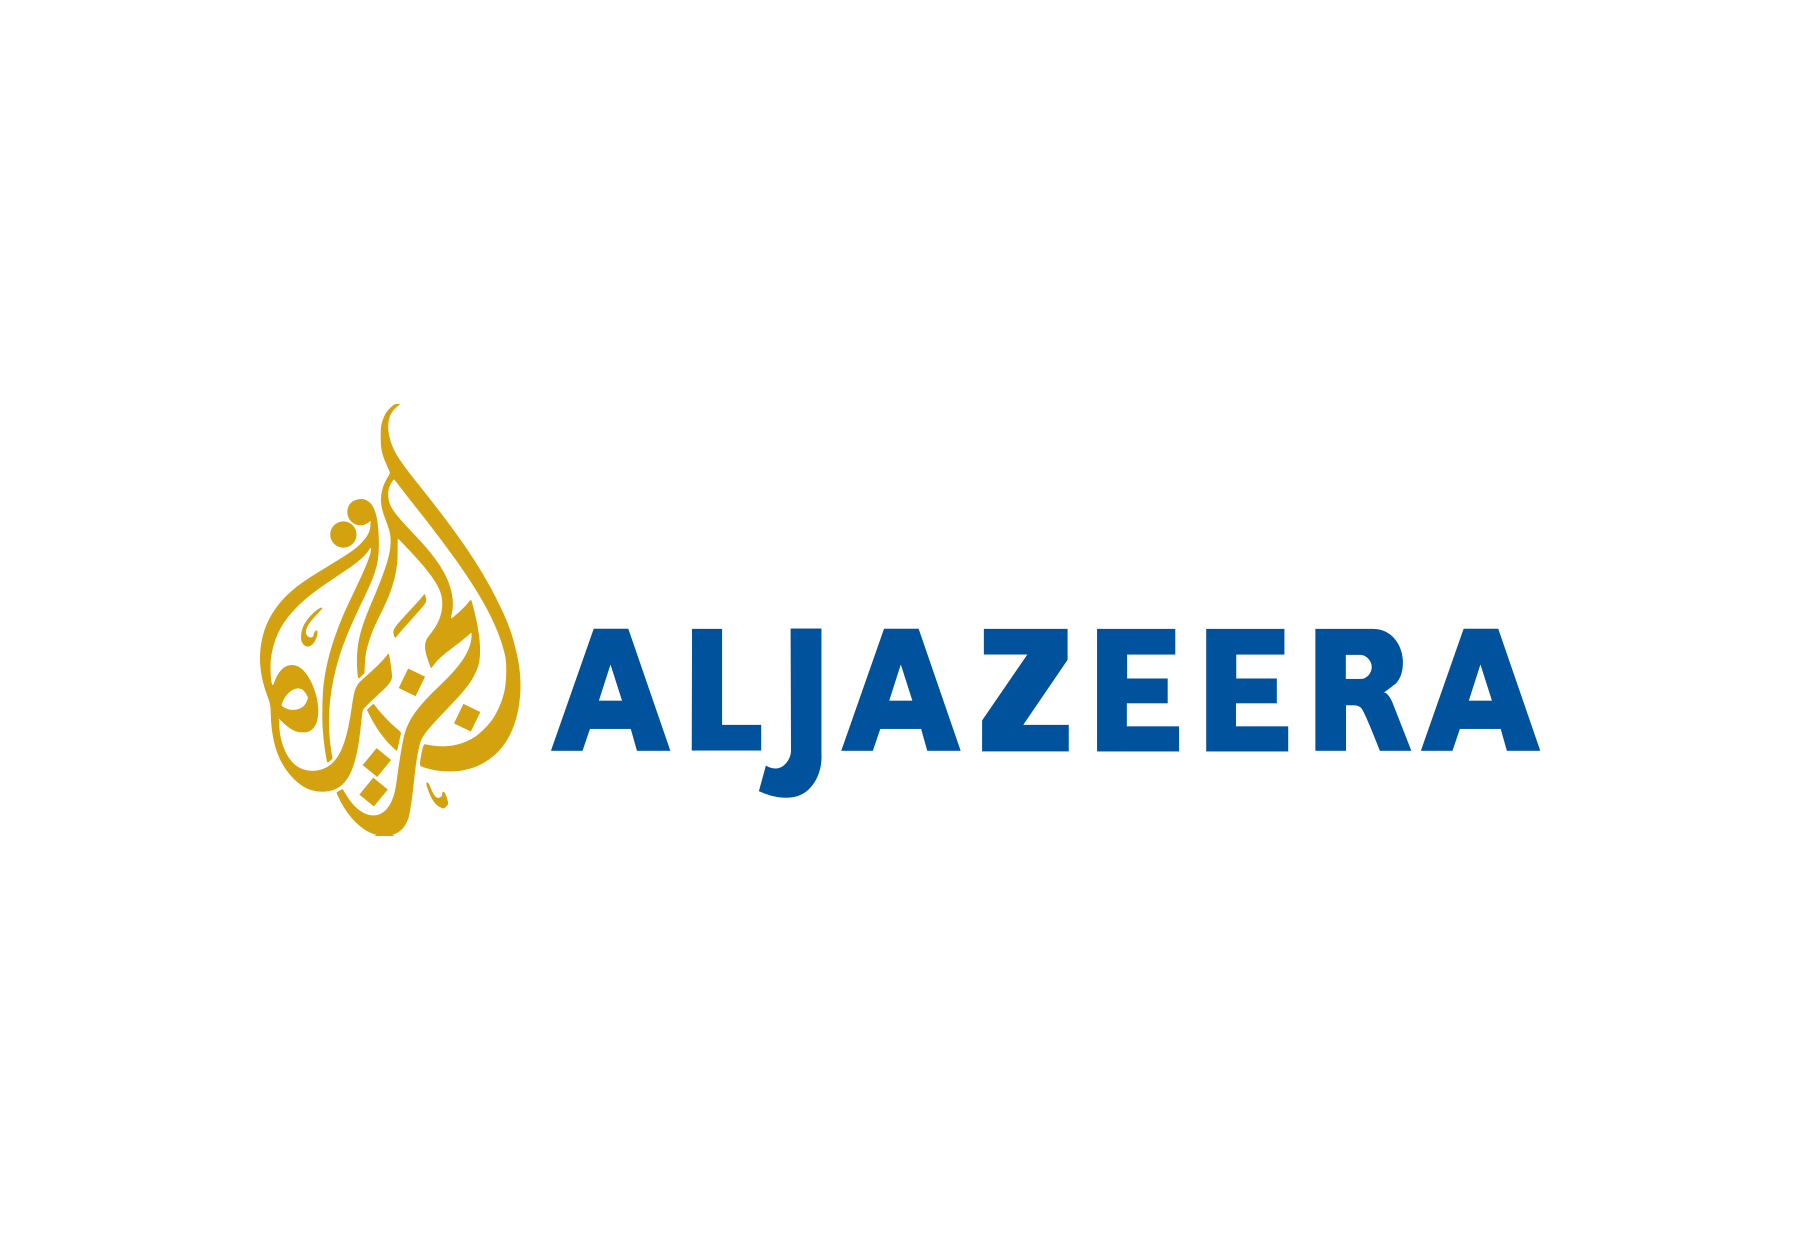 Al Jazeera Sports.png